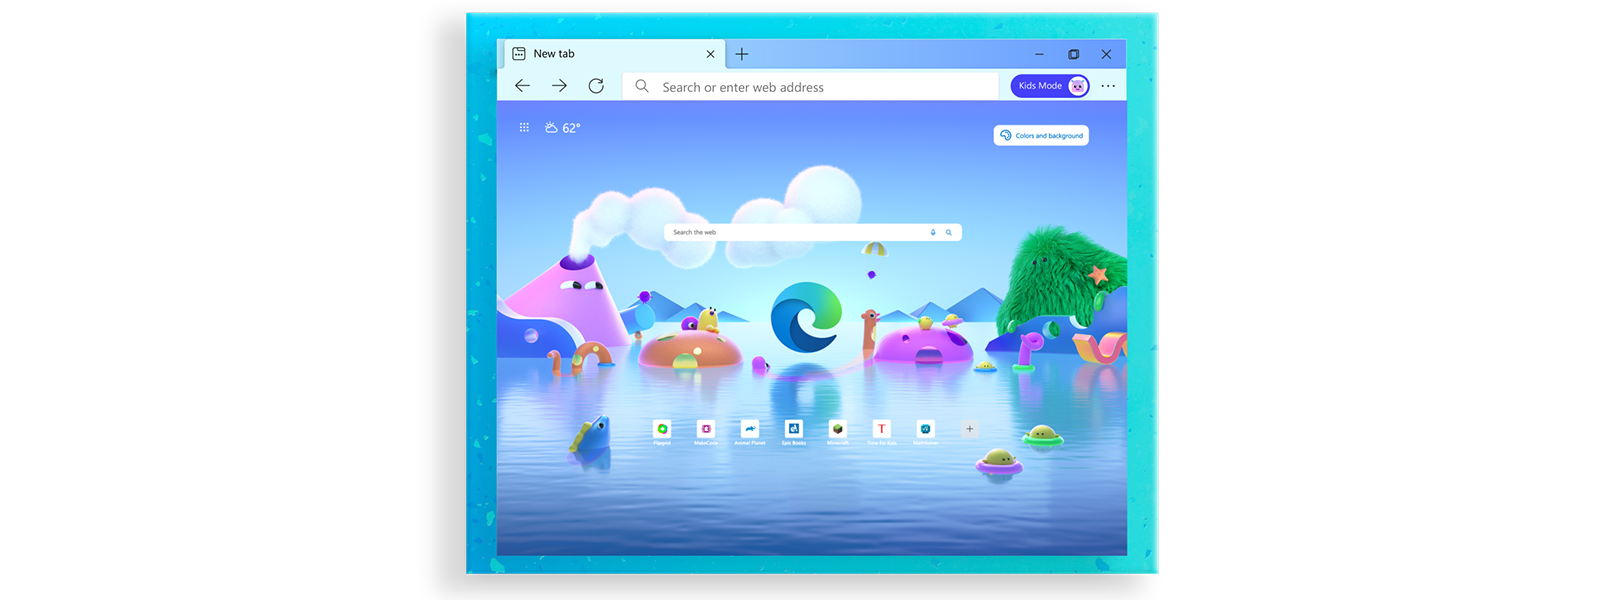 Pantalla de inicio del navegador de Microsoft Edge con distintos personajes de dibujos animados para el Modo infantil